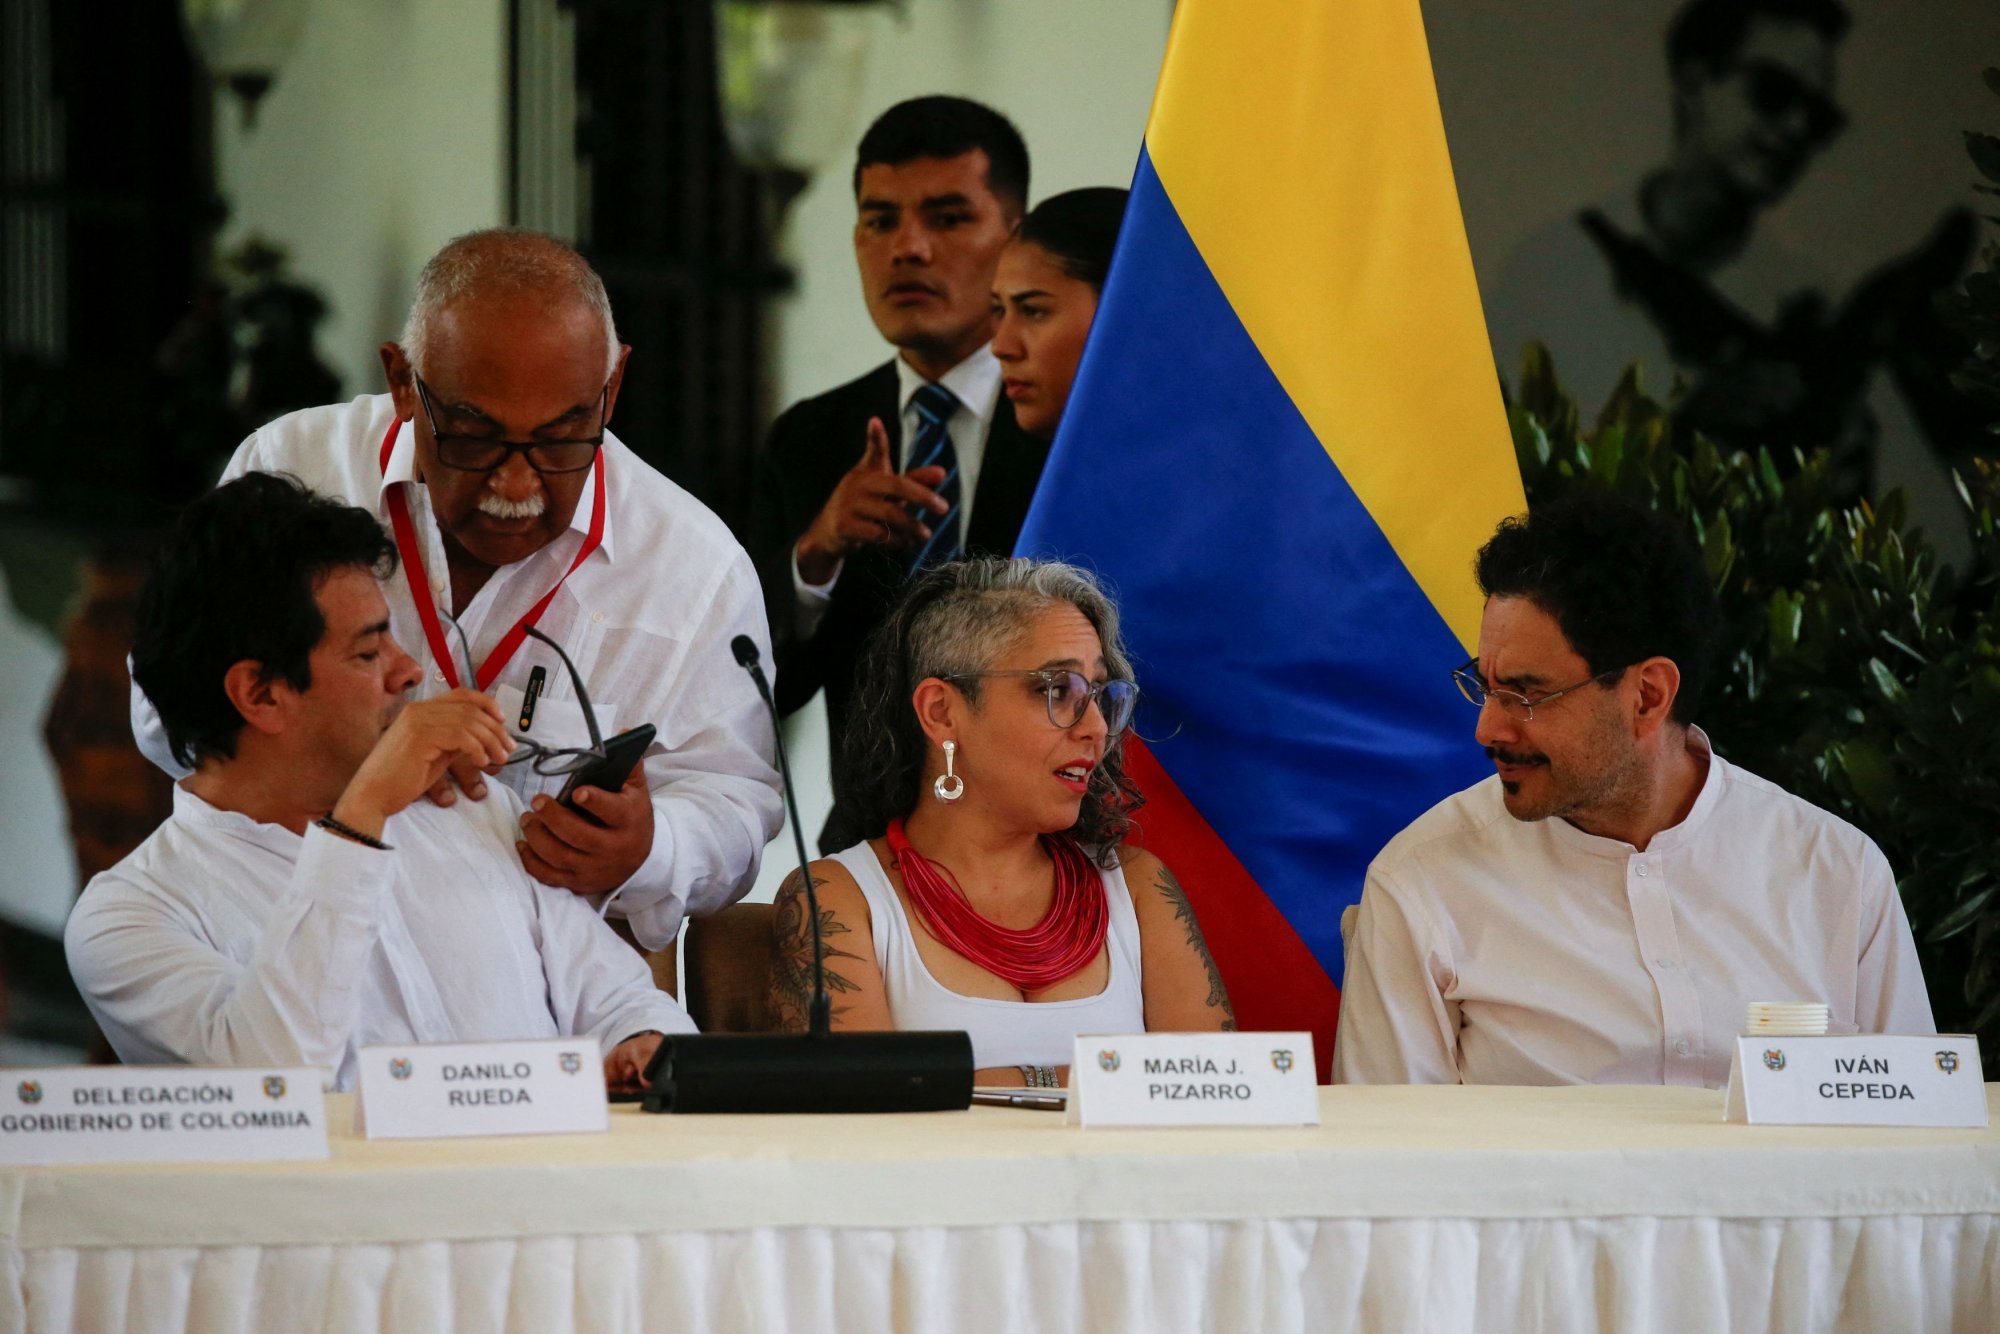 Ειρηνευτικές διαπραγματεύσεις στην Κολομβία: Τι αποφάσισαν κυβέρνηση και ELN